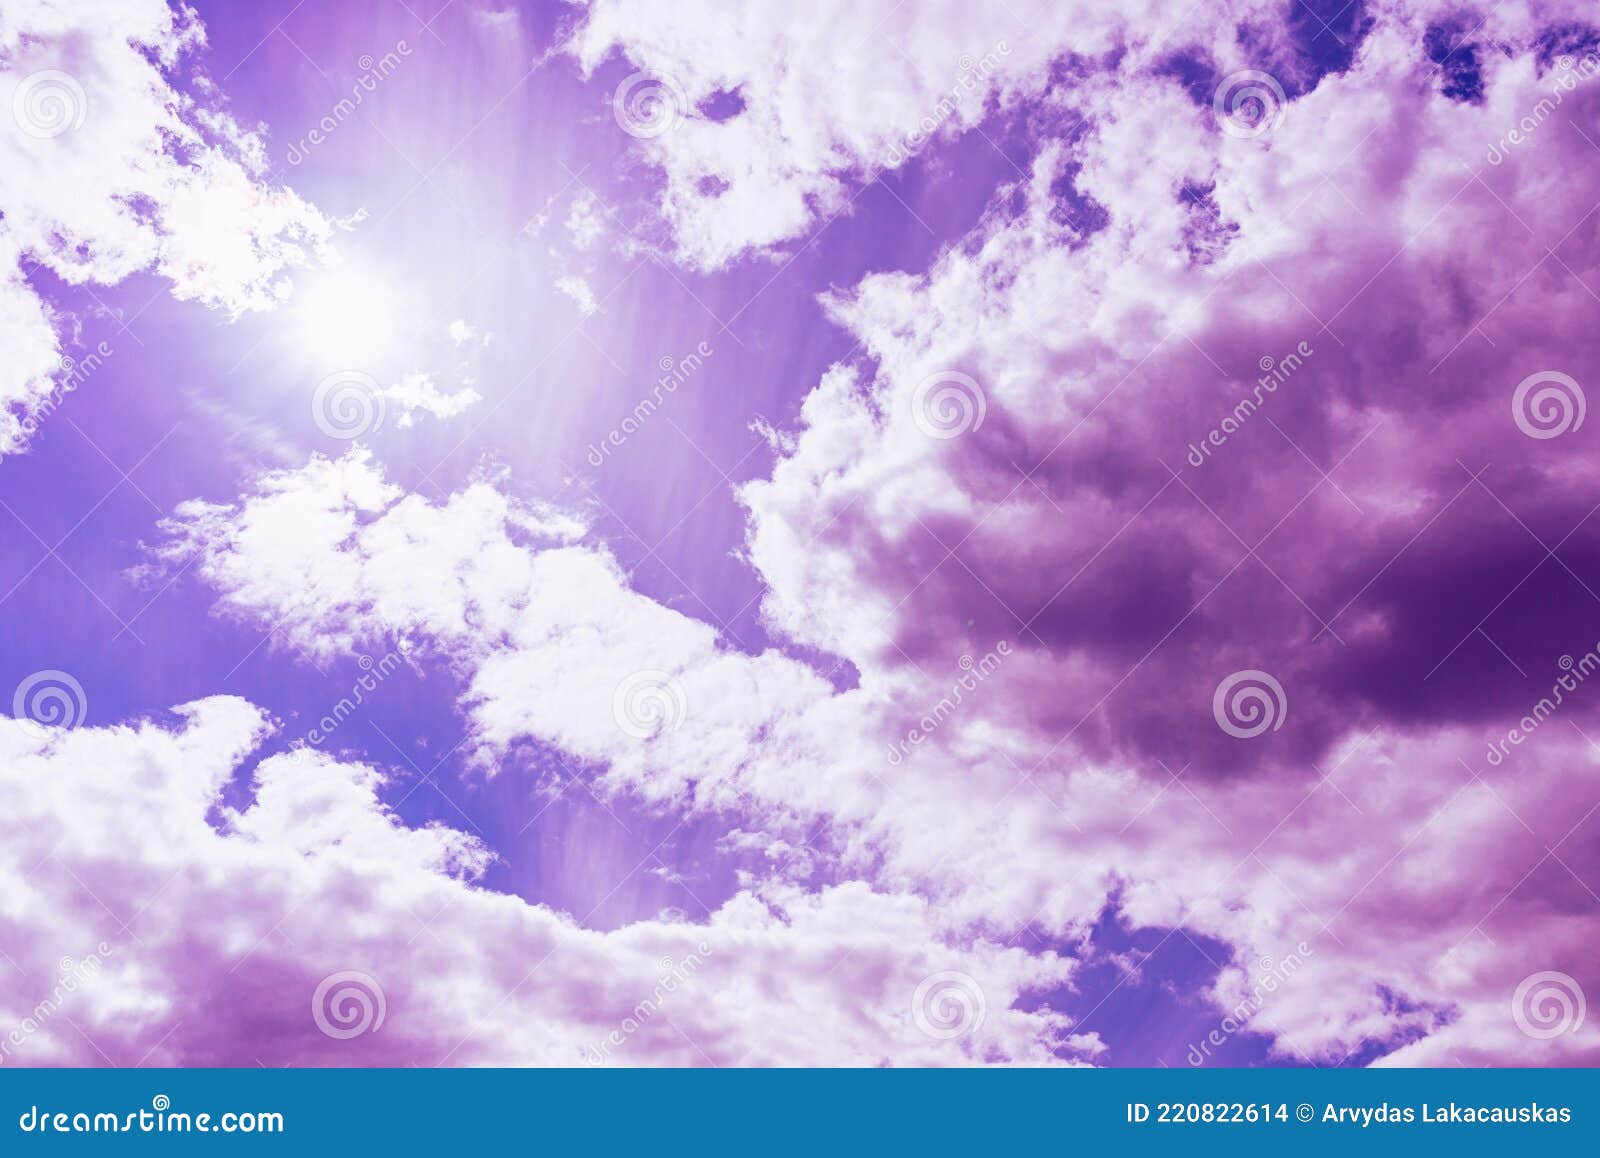 Với bầu trời xanh trong veo kết hợp với mây tím đẹp mê hồn, bức tranh Mây tím và bầu trời xanh đẹp chắc chắn sẽ khiến bạn bị choáng ngợp và thích thú ngay từ cái nhìn đầu tiên. Bạn sẽ không thể cưỡng lại được vẻ đẹp trầm lắng và đầy sức sống này.